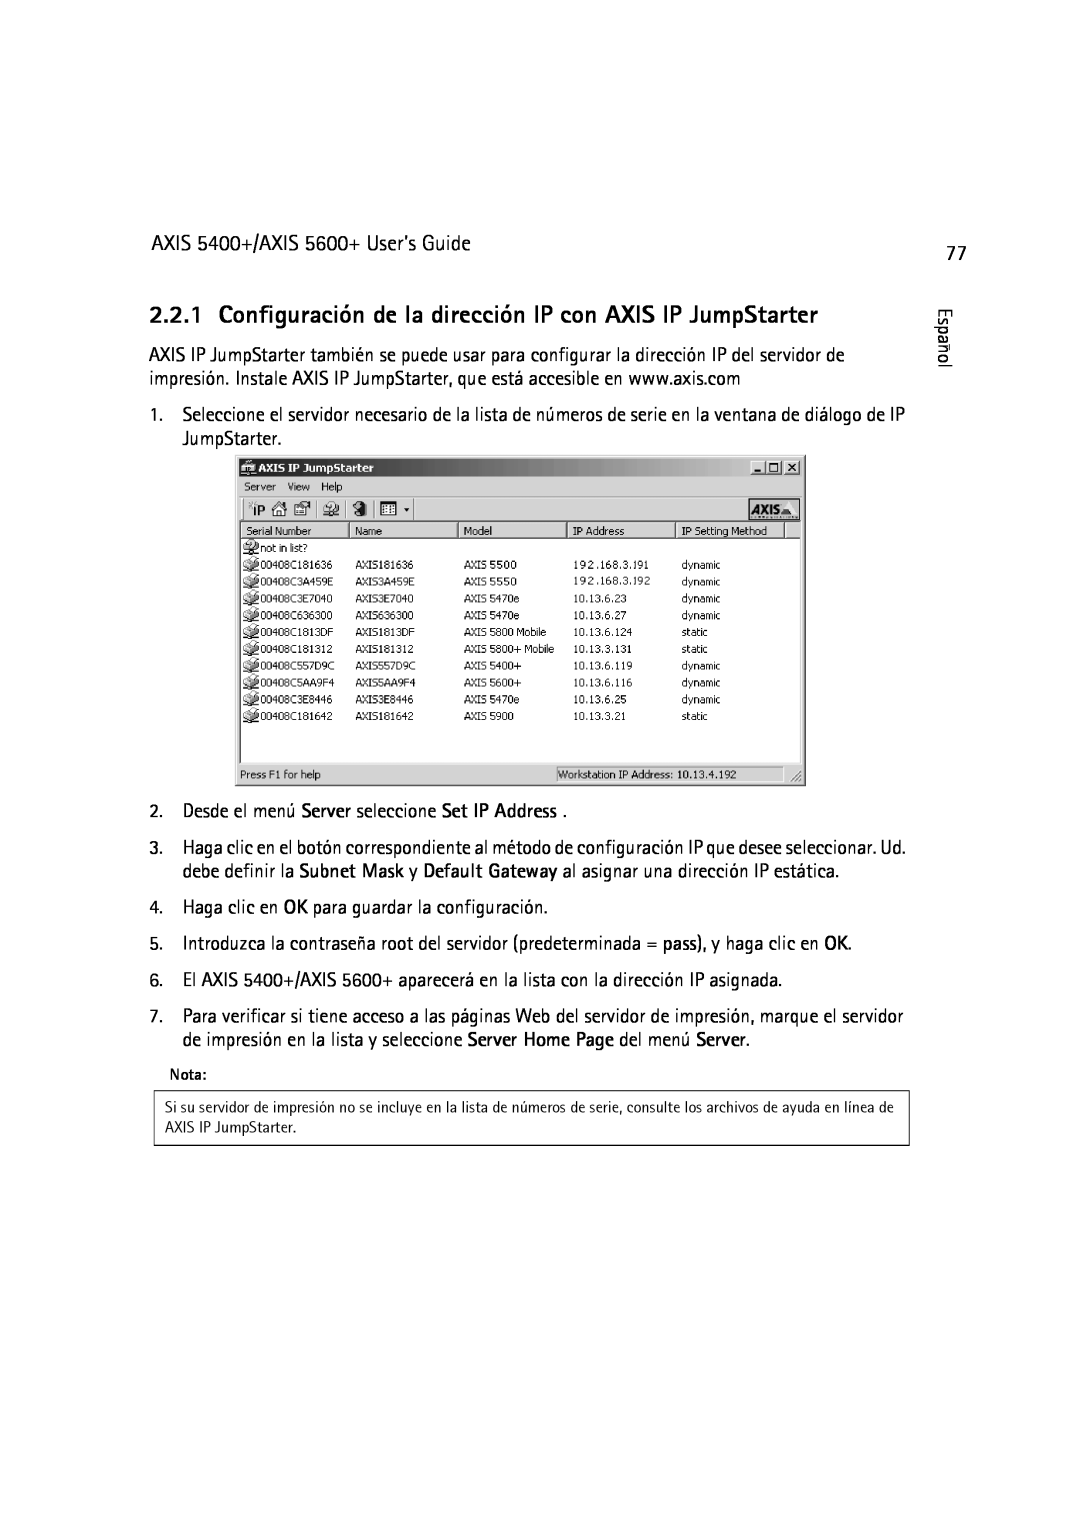 Dell manual Configuración de la dirección IP con AXIS IP JumpStarter, AXIS 5400+/AXIS 5600+ User’s Guide 